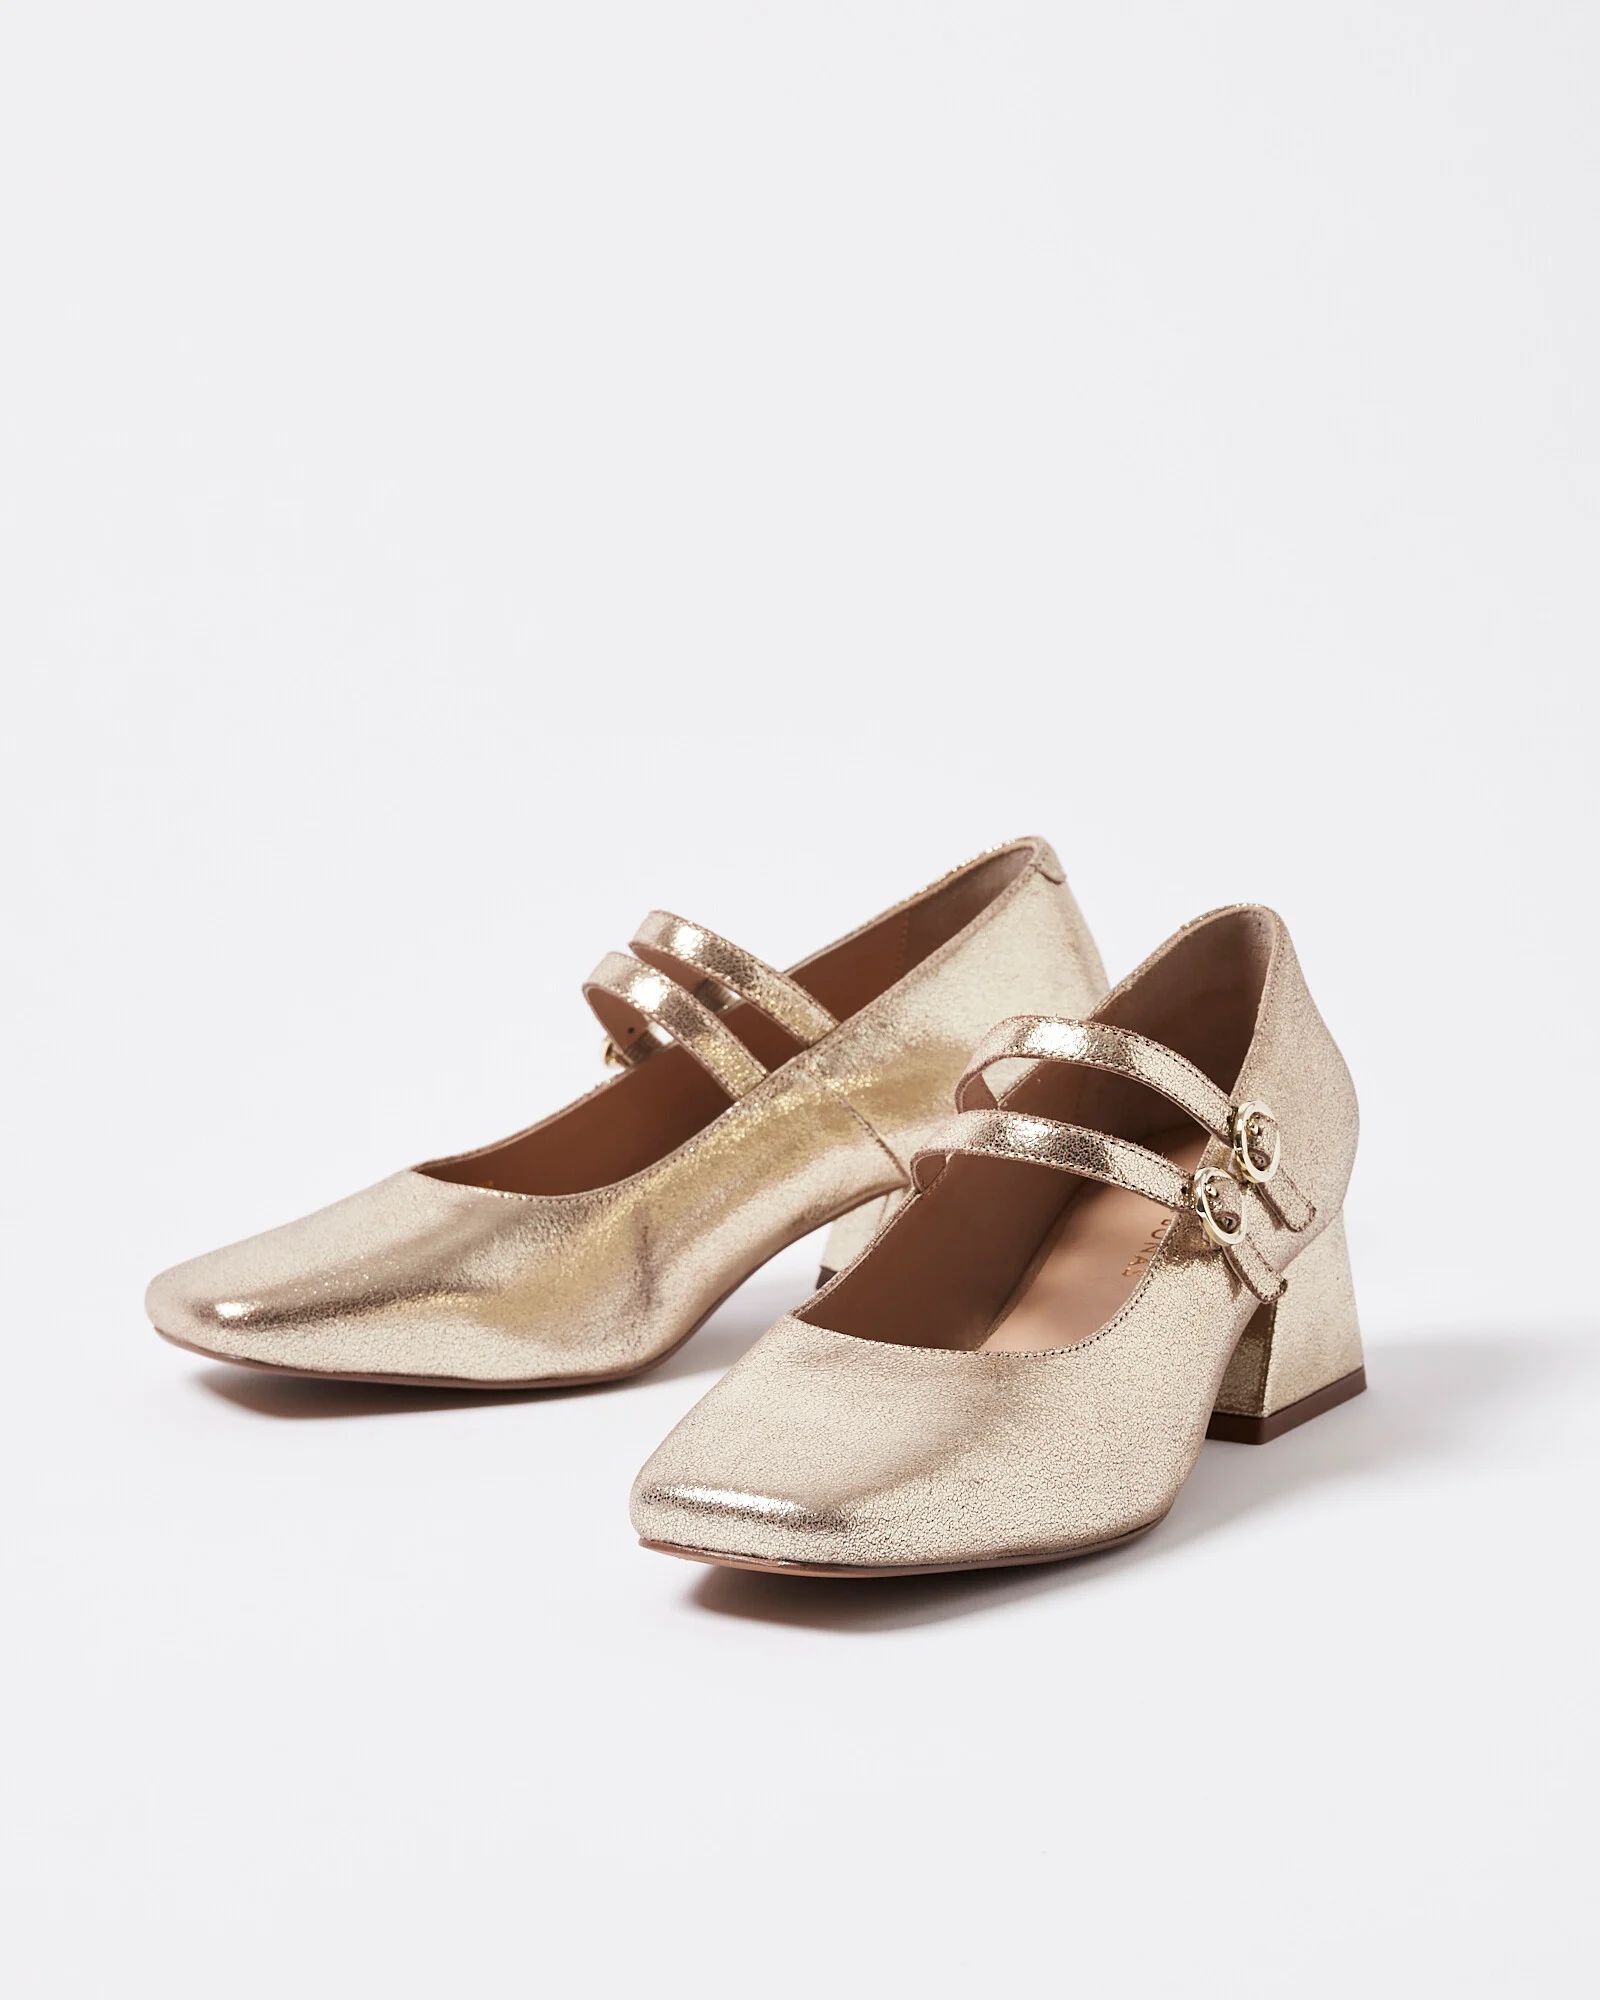 Mary Jane Gold Metallic Leather Flared Heeled Shoes | Oliver Bonas US | Oliver Bonas (Global)